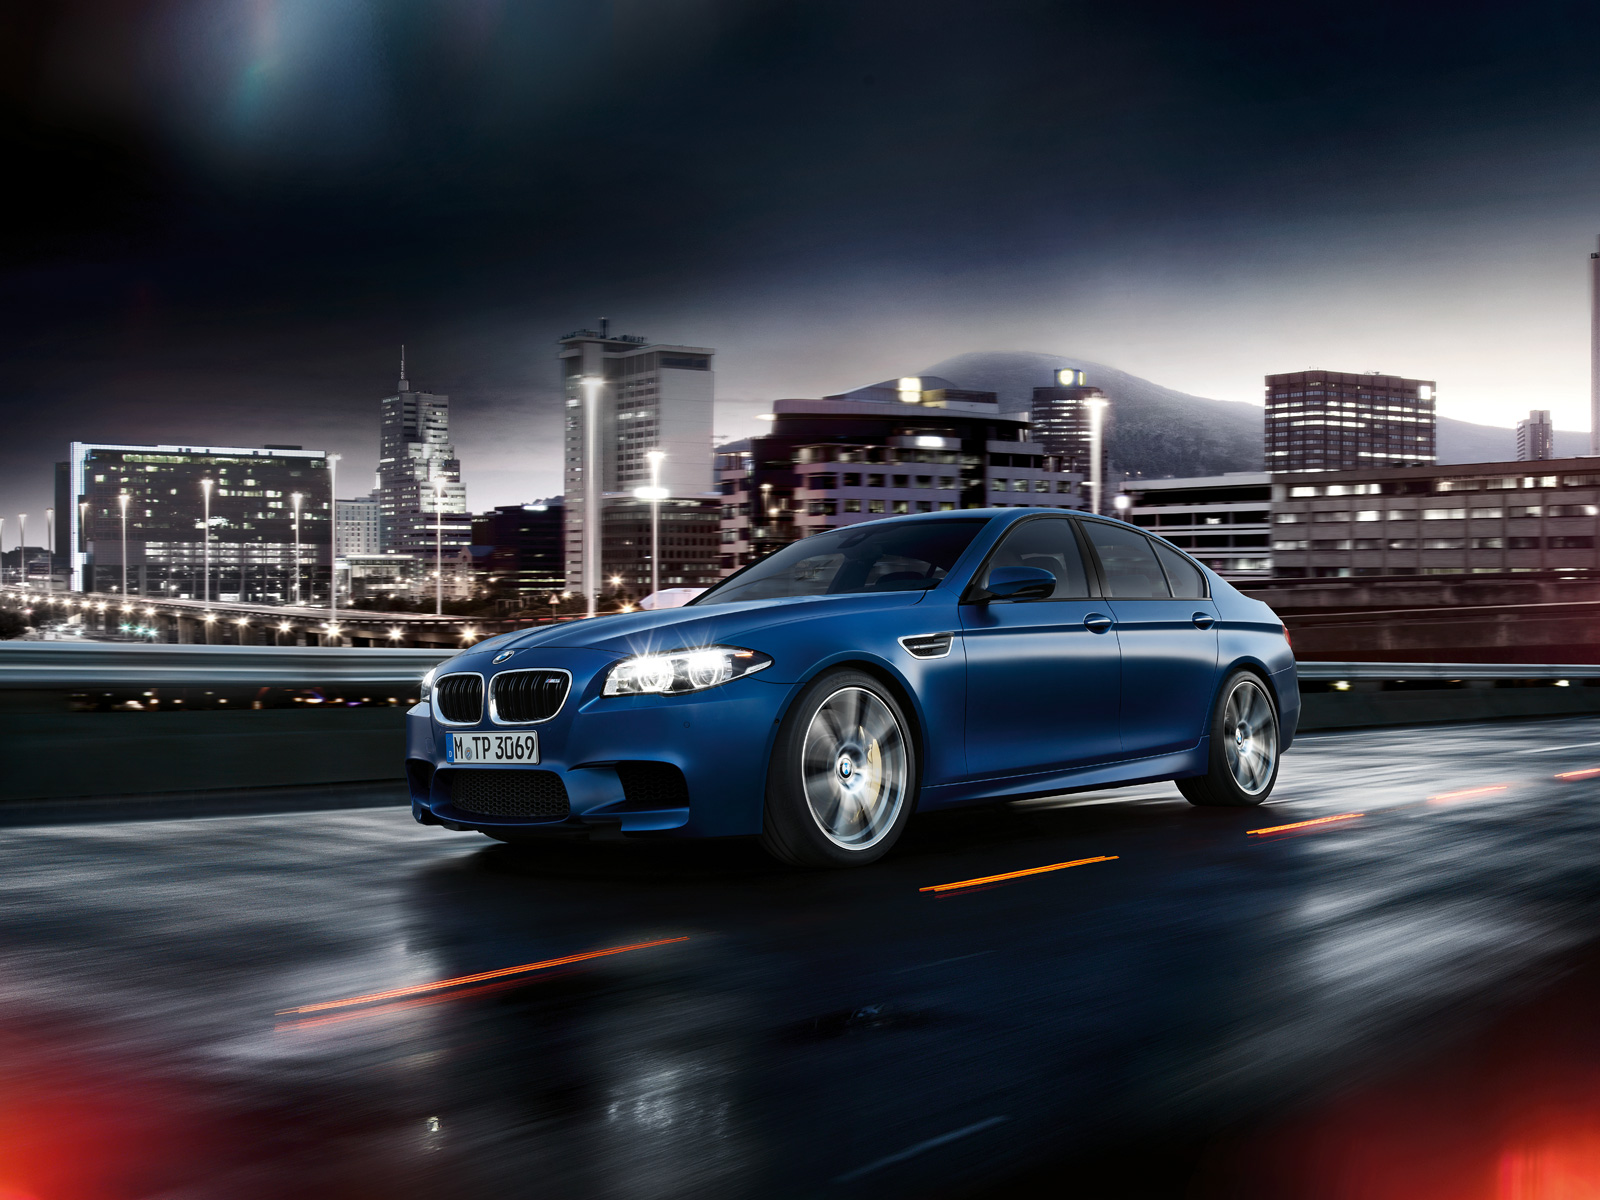 BMW_M5_Sedan_Wallpaper_1600x1200_06.jpg